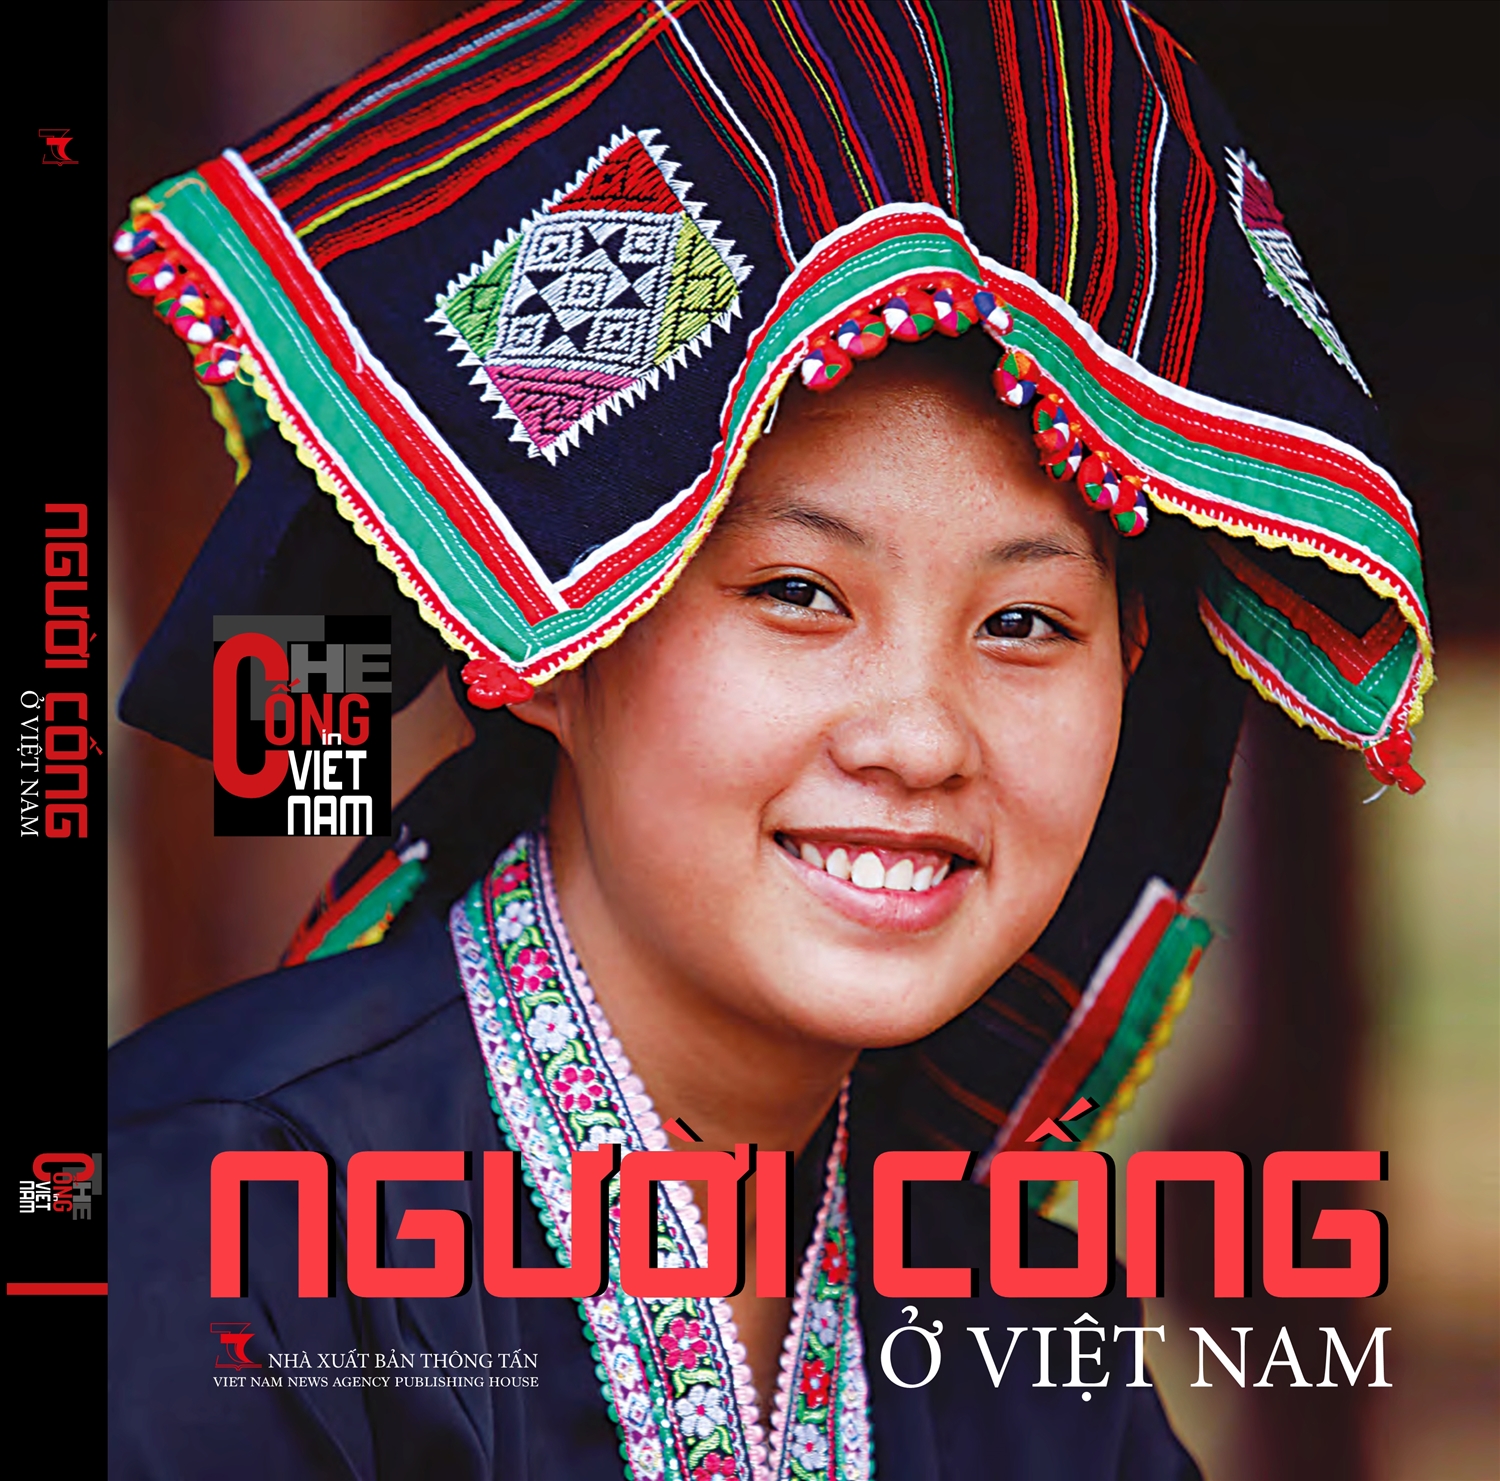 Bìa cuốn sách "Người Cống ở Việt Nam"